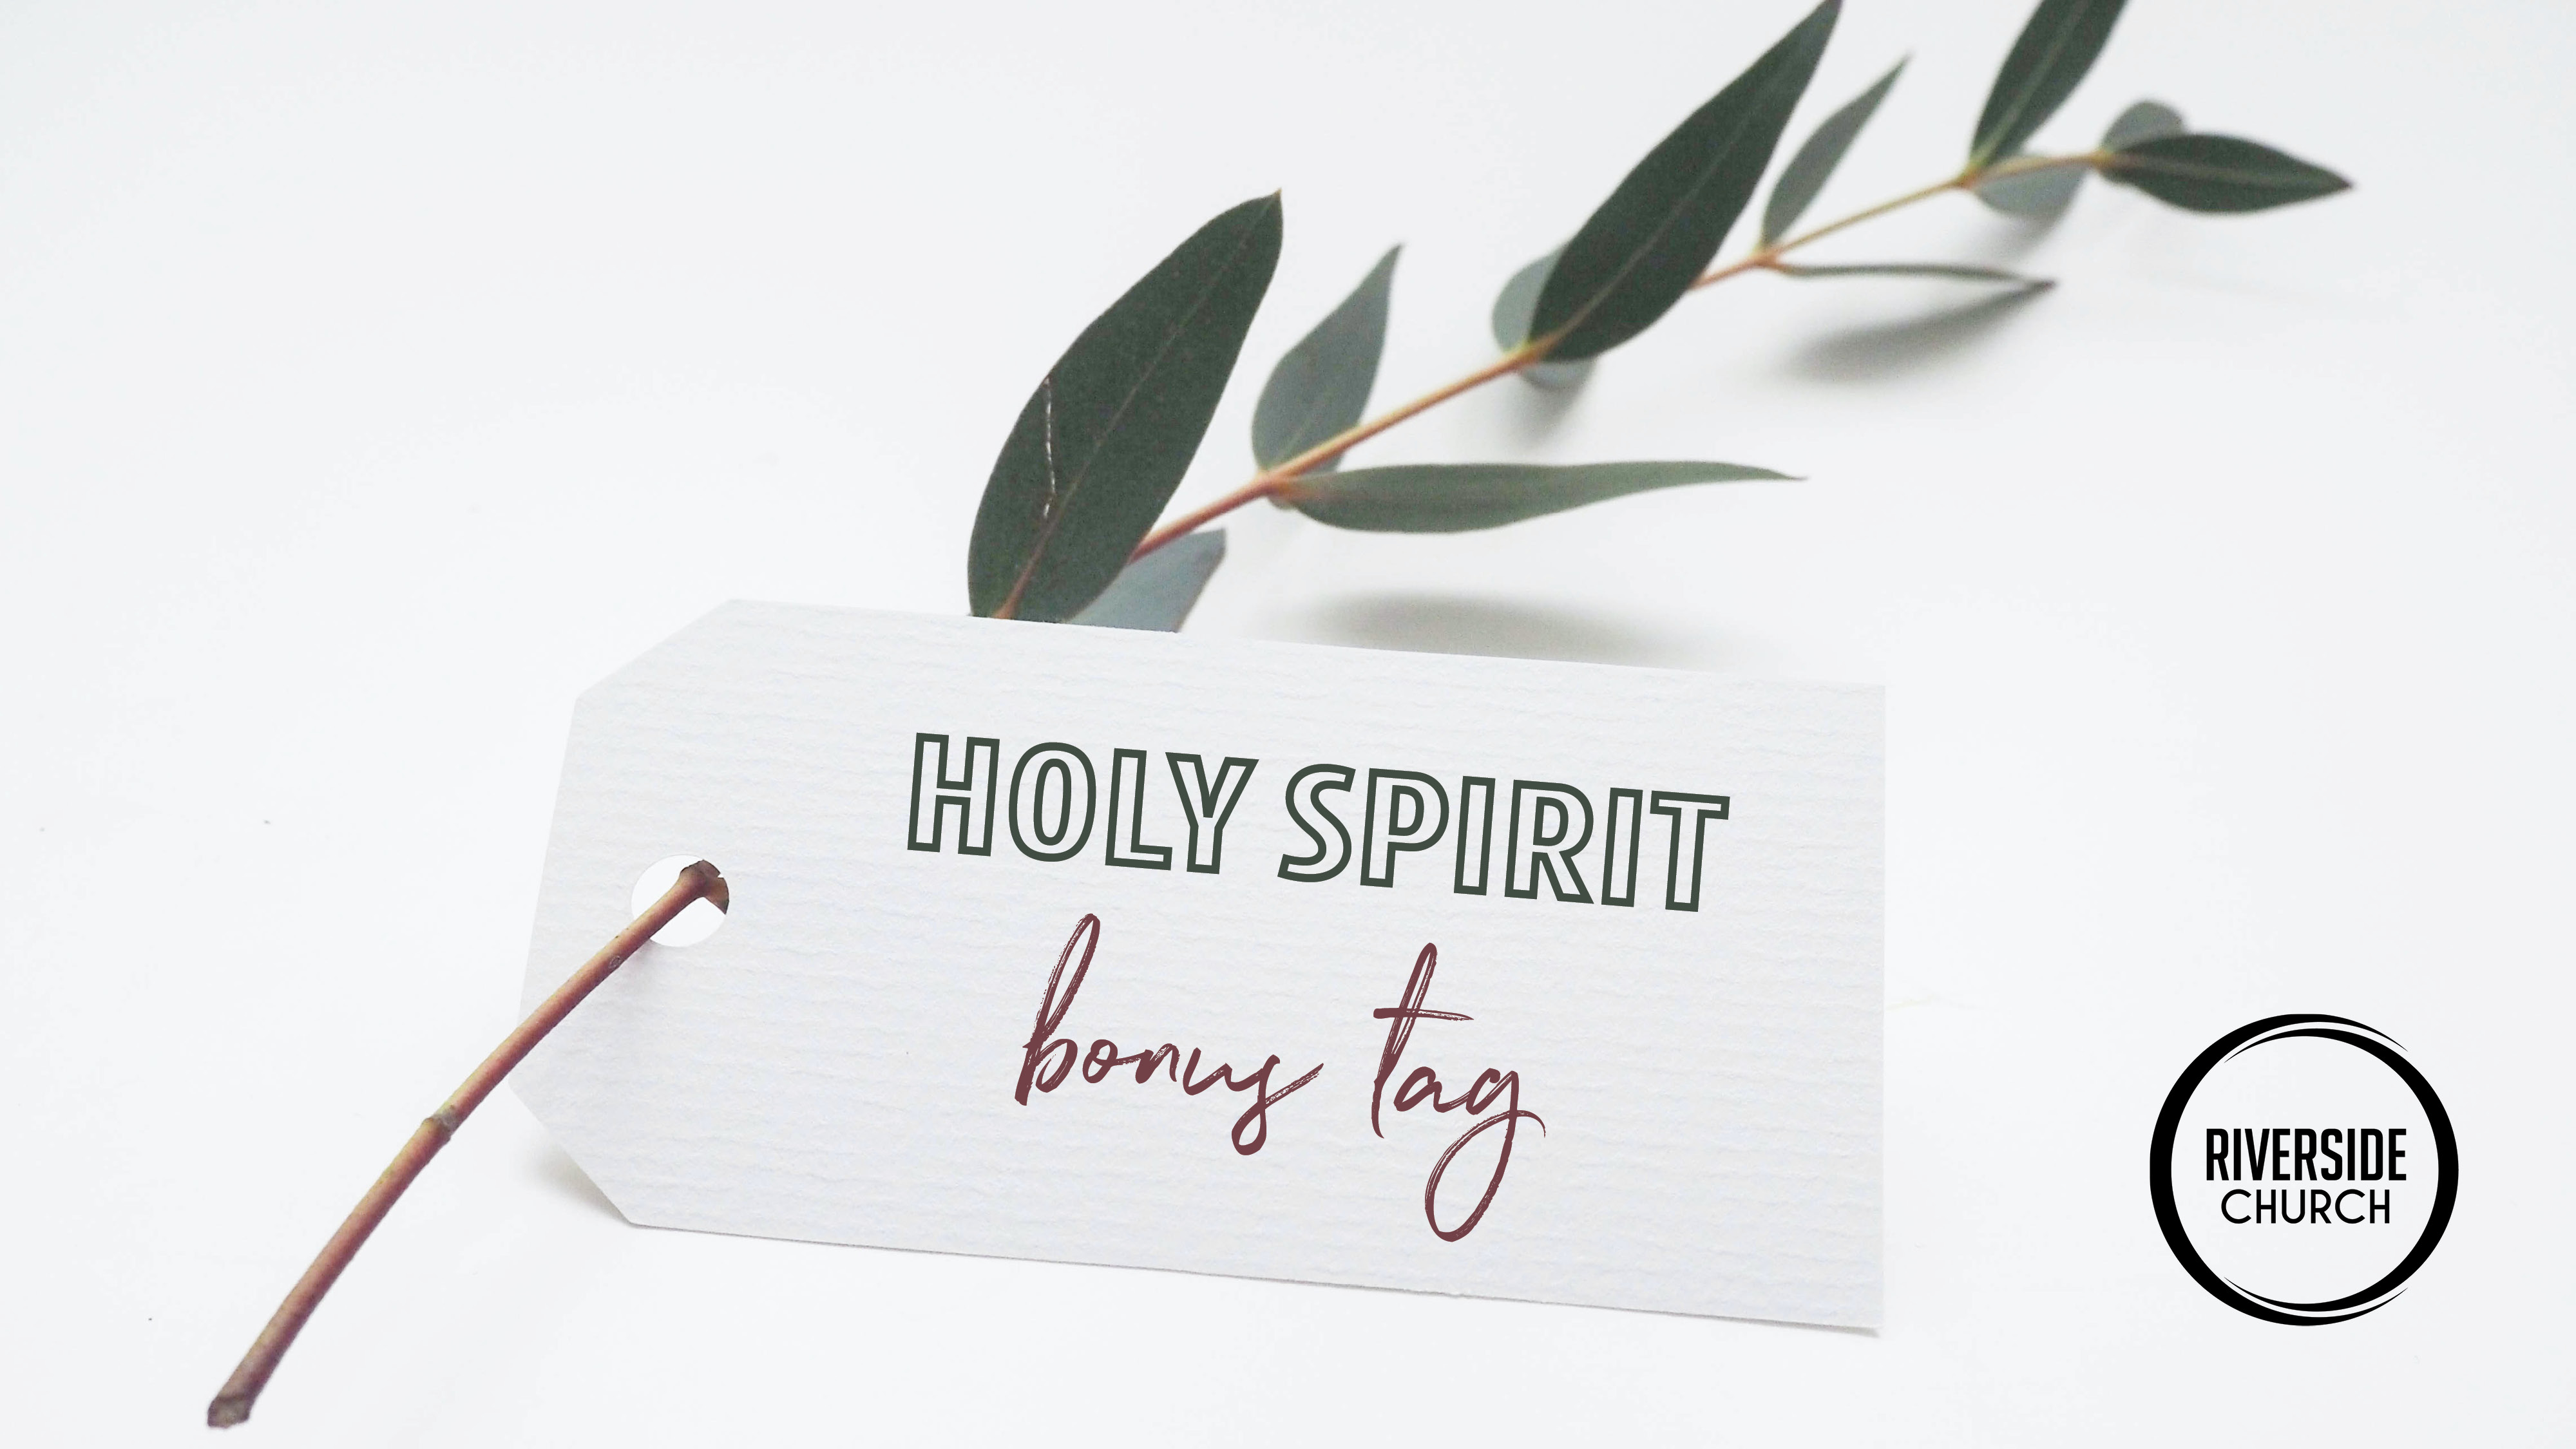 Holy Spirit Bonus Tag banner